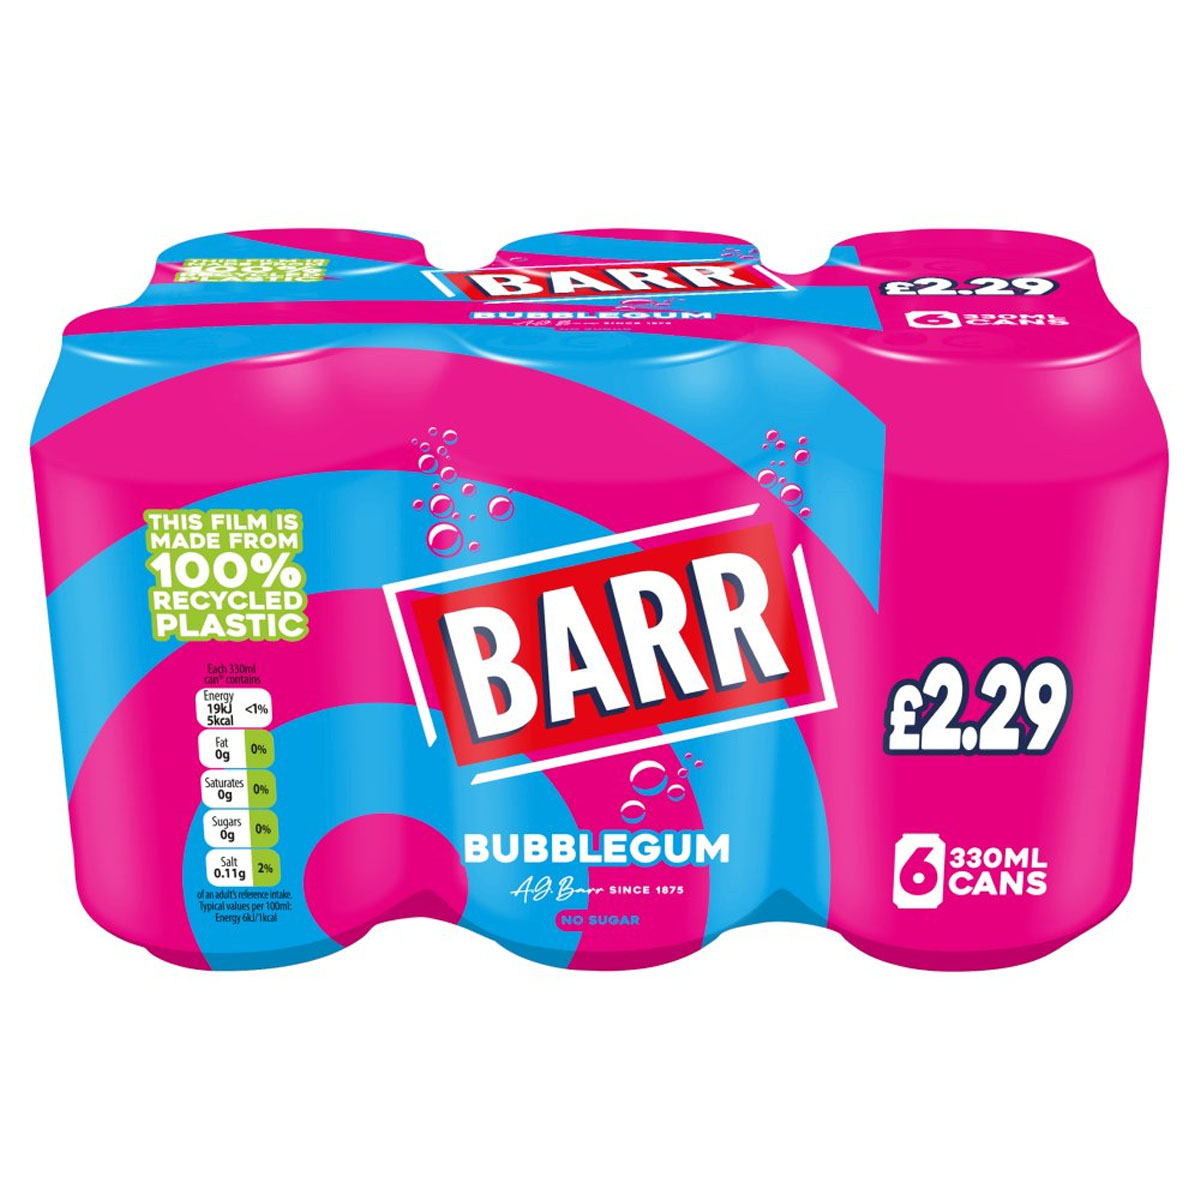 A pack of Barr - Bubblegum - 6x330ml bubble gum.